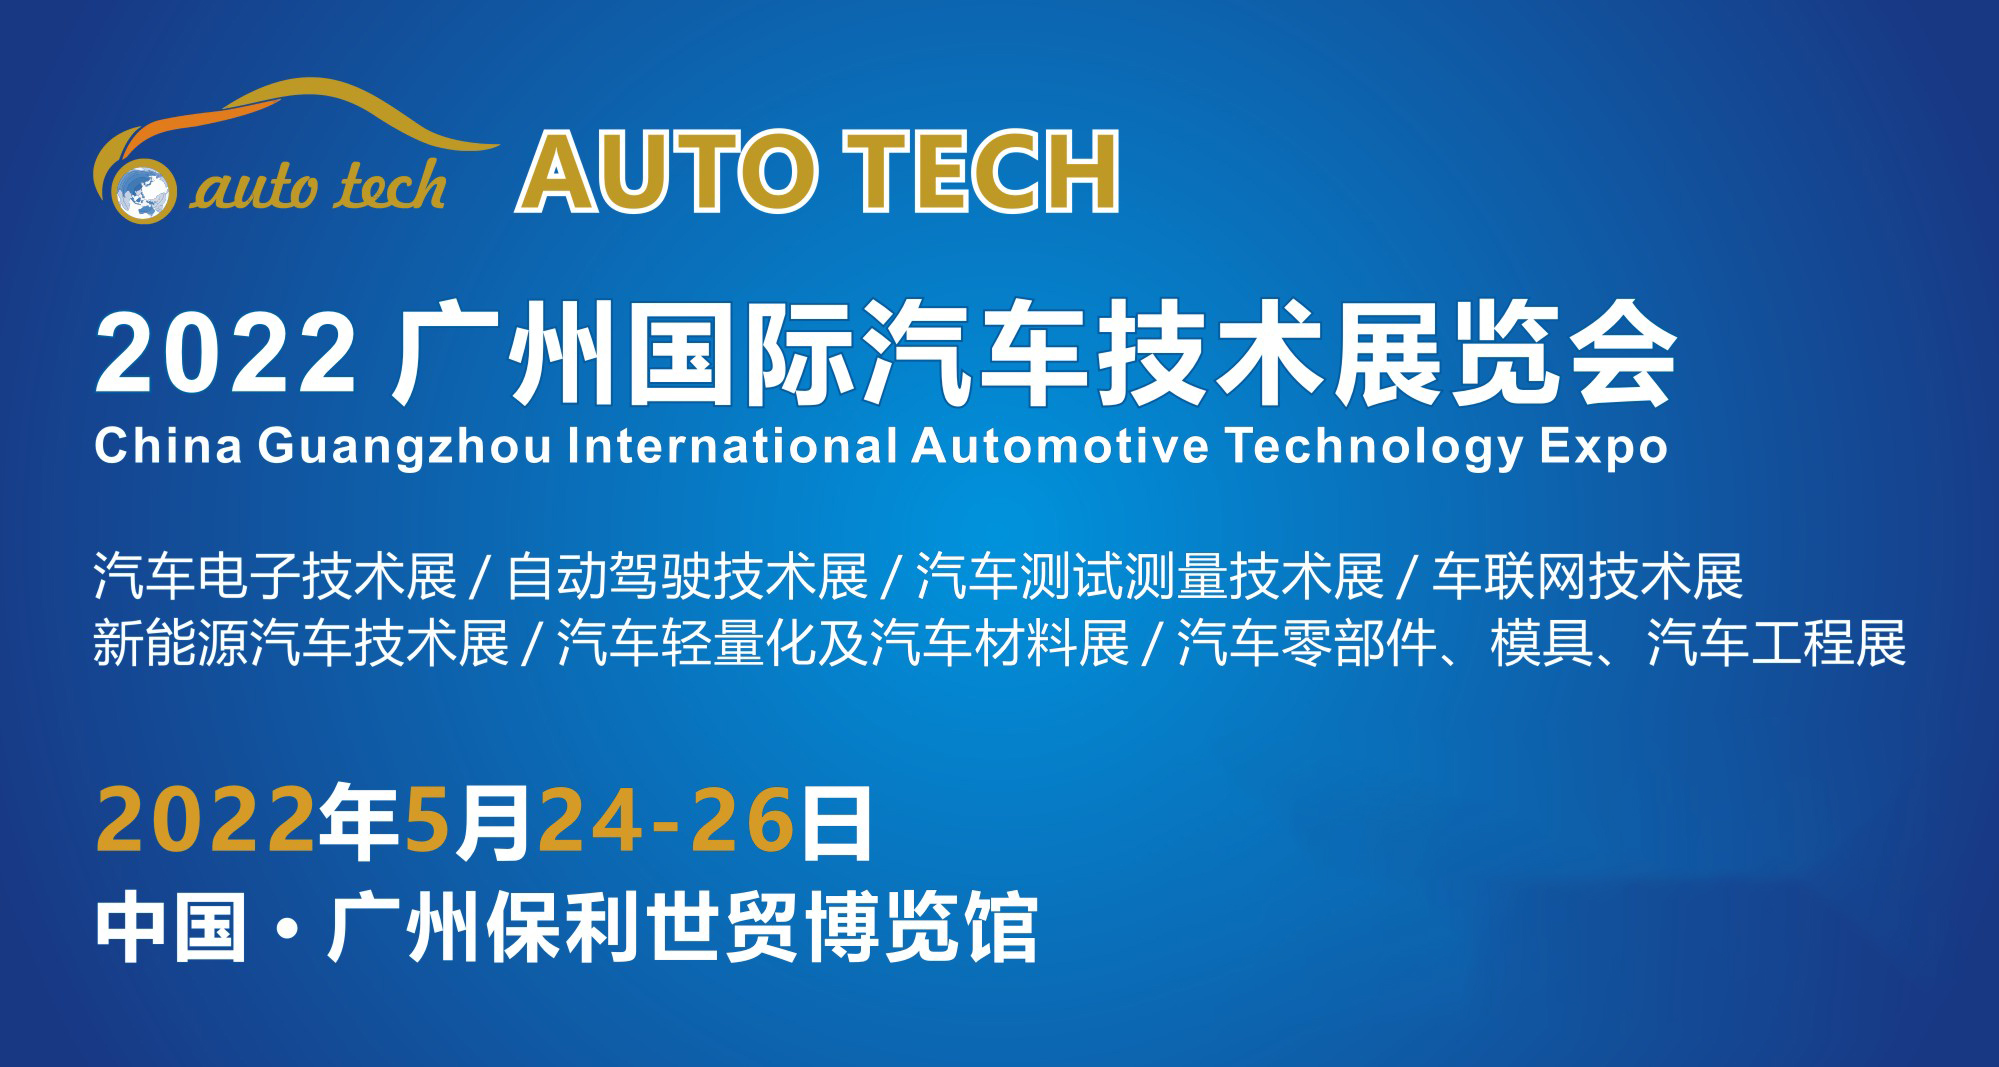 阿美特克将携重磅产品参加 中国广州国际汽车技术展览会